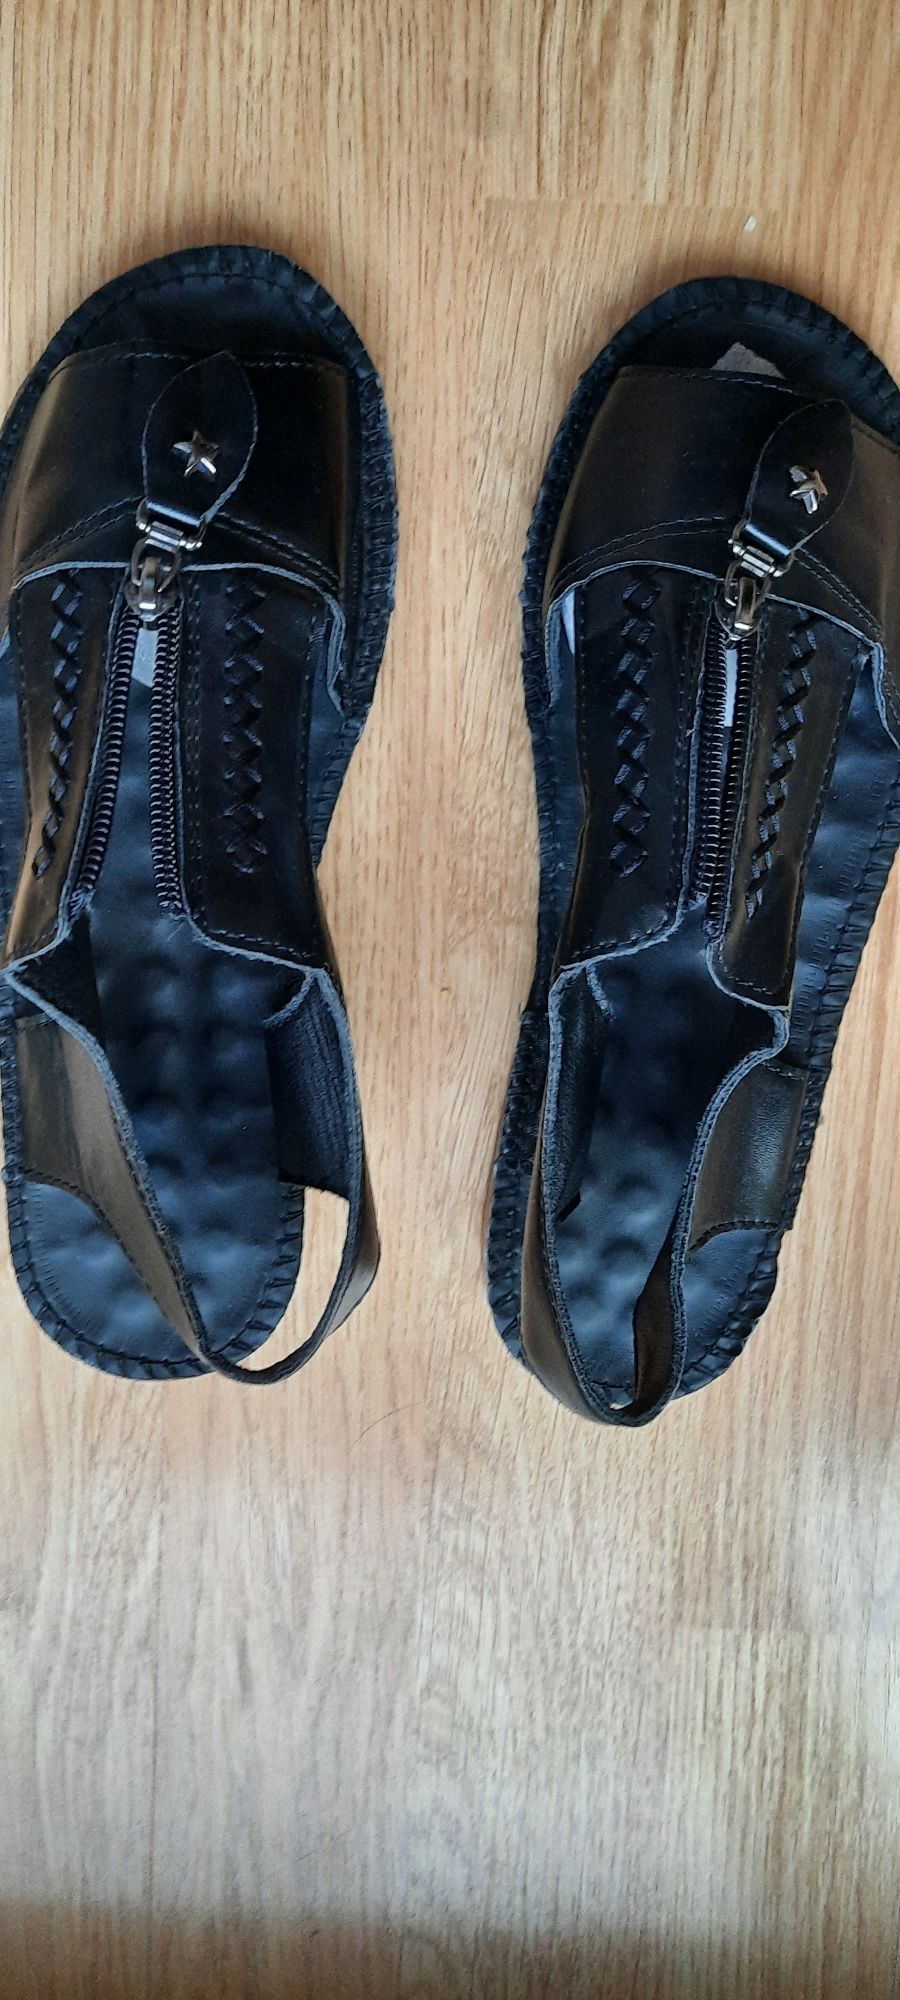 Sandale dama, culoare neagră